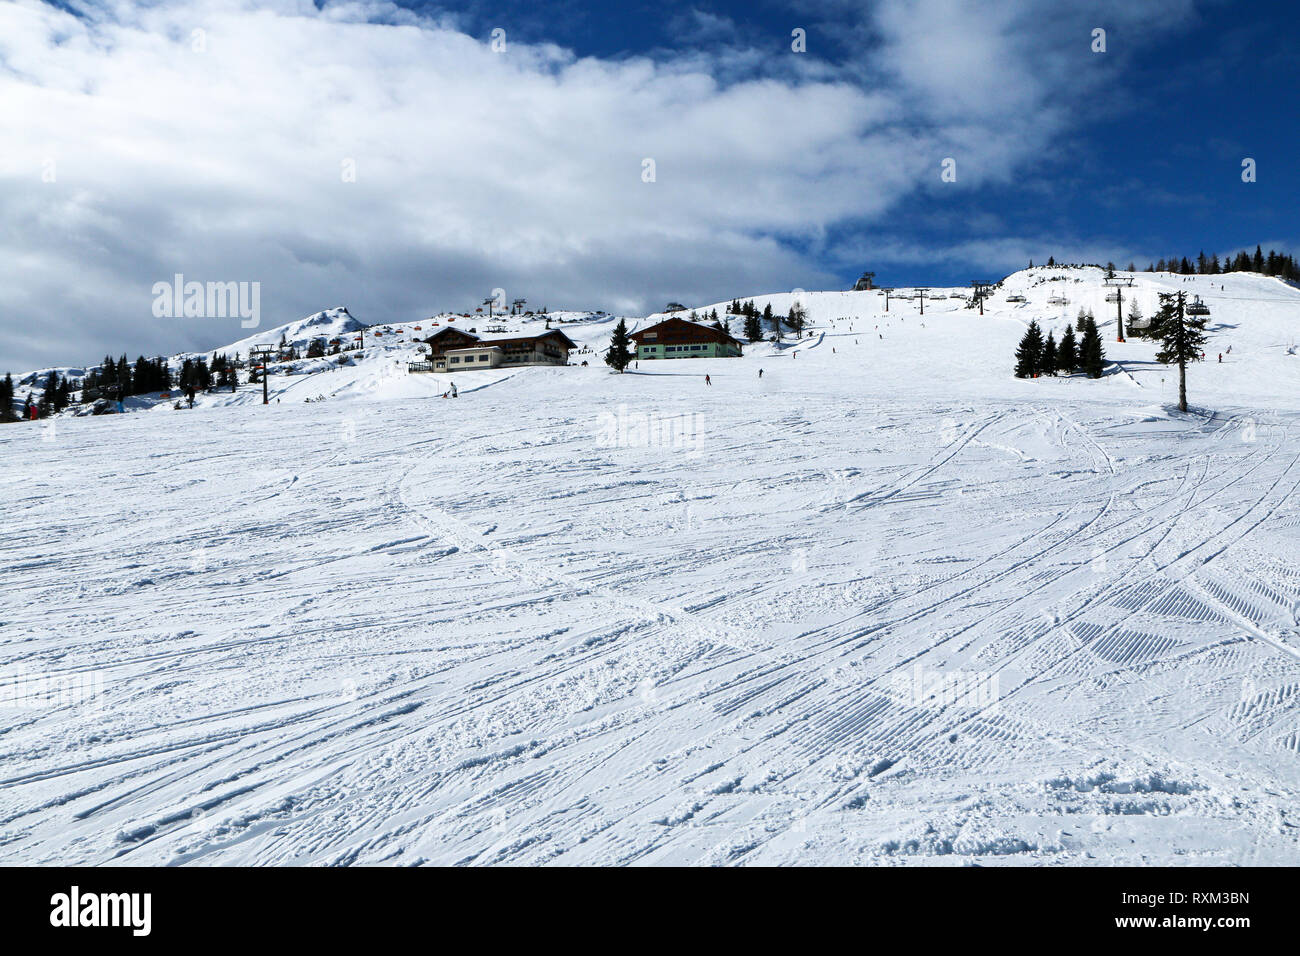 Ein Bild von der Skistation in den österreichischen Alpen. Schnee und Wetter perfekt sind, Hänge sind leer. Skifahren ist Leidenschaft in diesen Bedingungen. Stockfoto